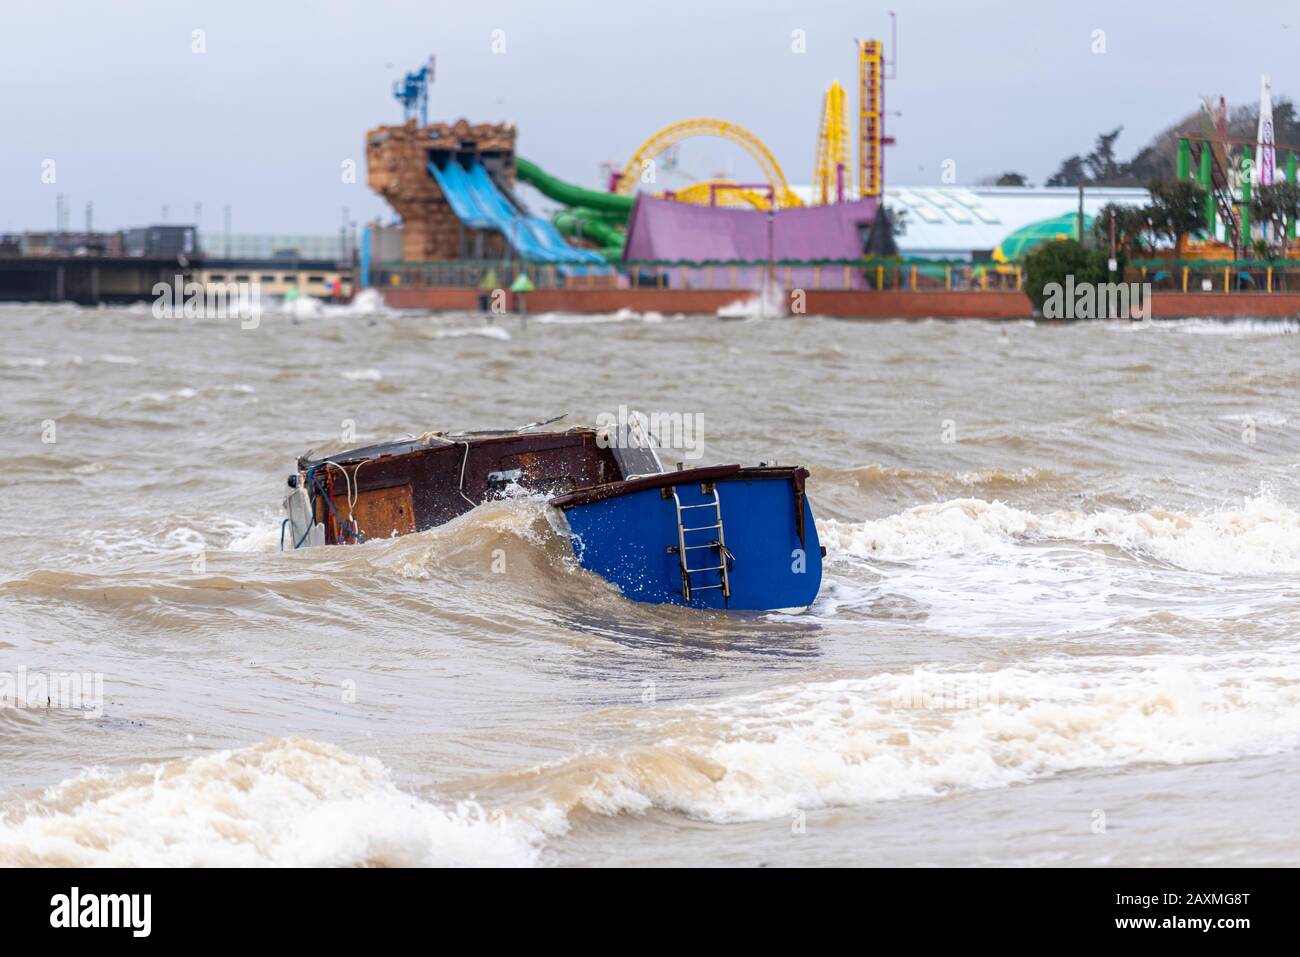 Barca affondamento e Adventure Island parco di piacere fronte al mare durante l'alta marea tempesta in seguito alla tempesta Ciara a Southend on Sea, Essex, Regno Unito Foto Stock